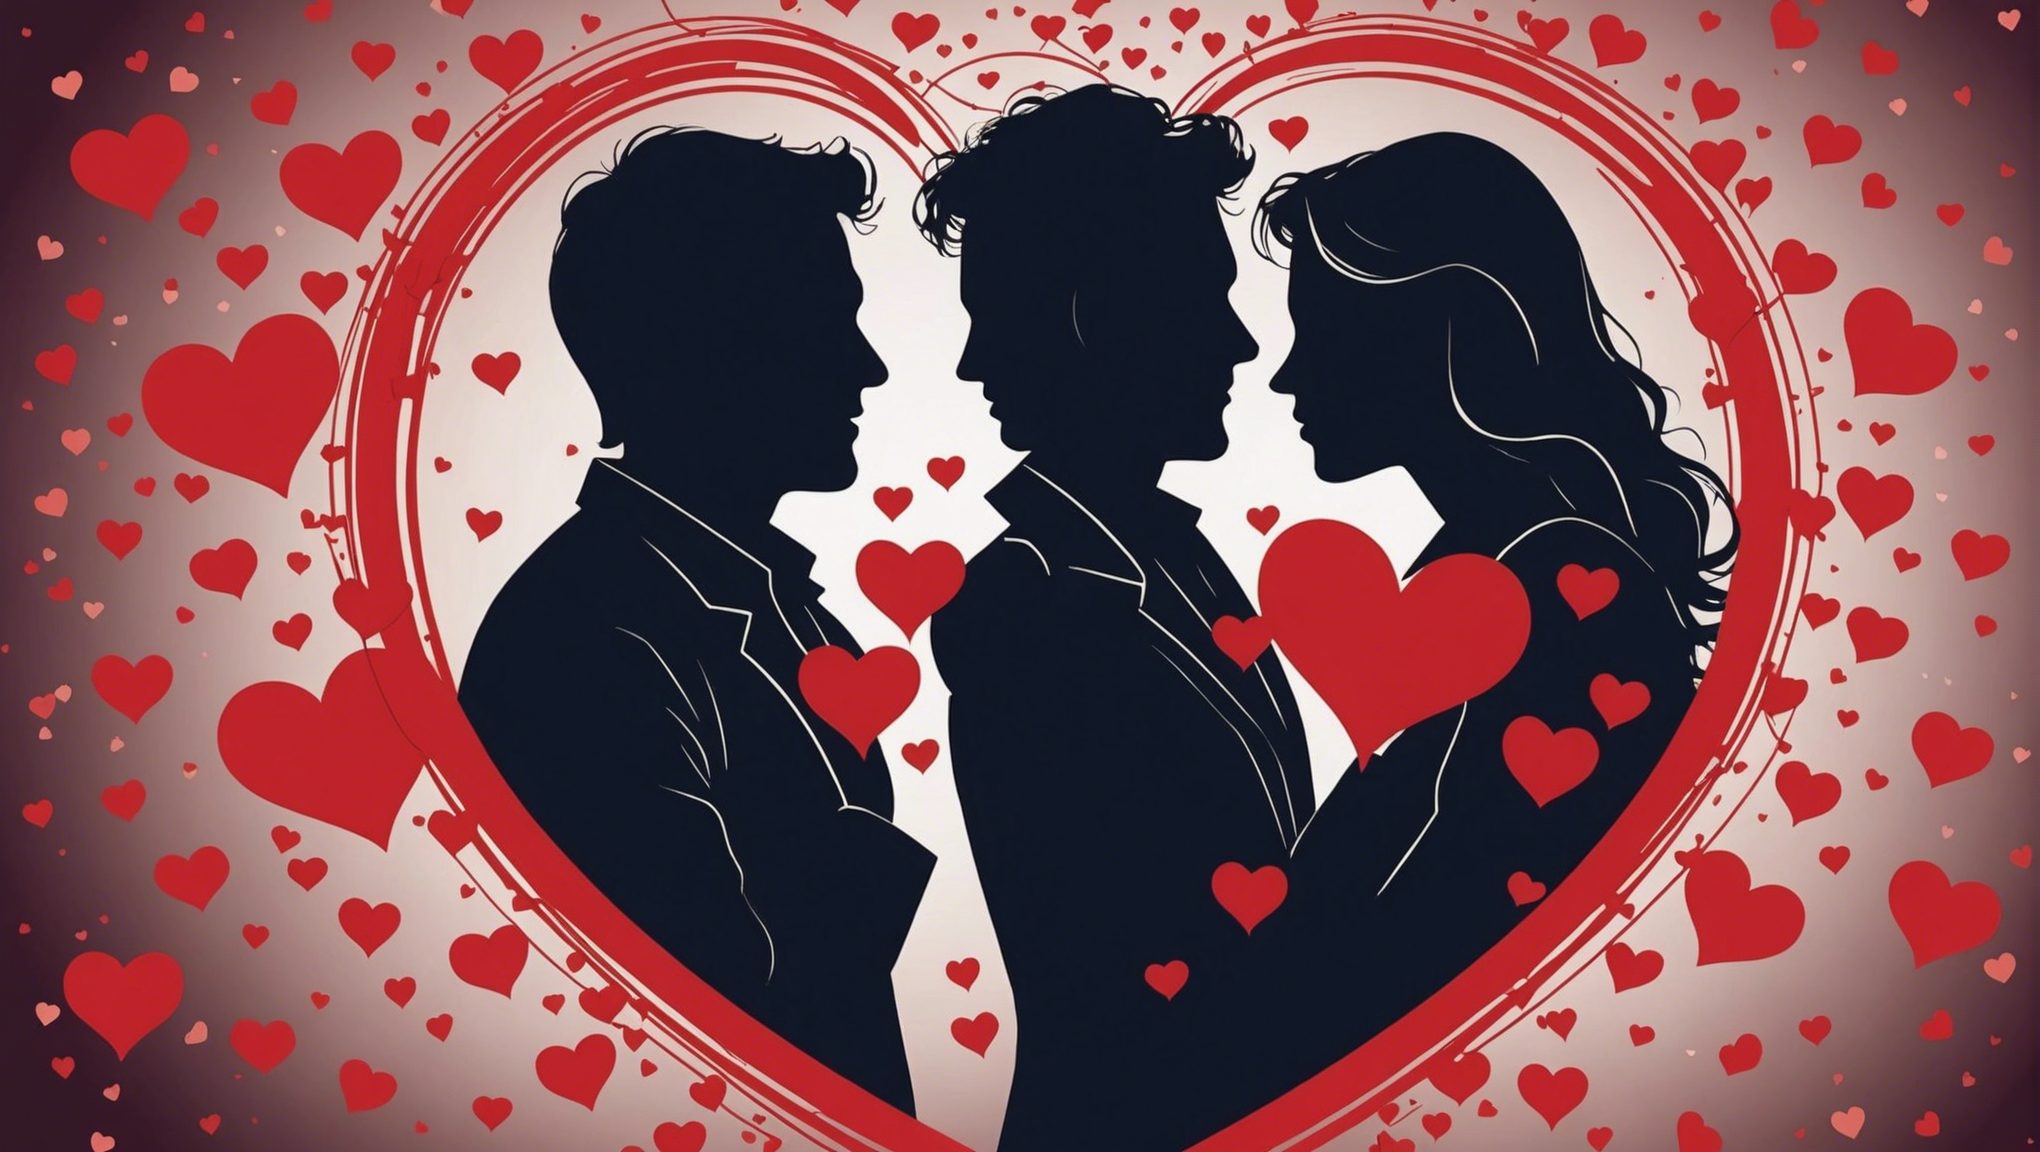 découvrez les réponses aux questions les plus fréquemment posées sur l'amour dans cet article informatif. trouvez des conseils et des astuces pour mieux comprendre l'amour et améliorer vos relations.